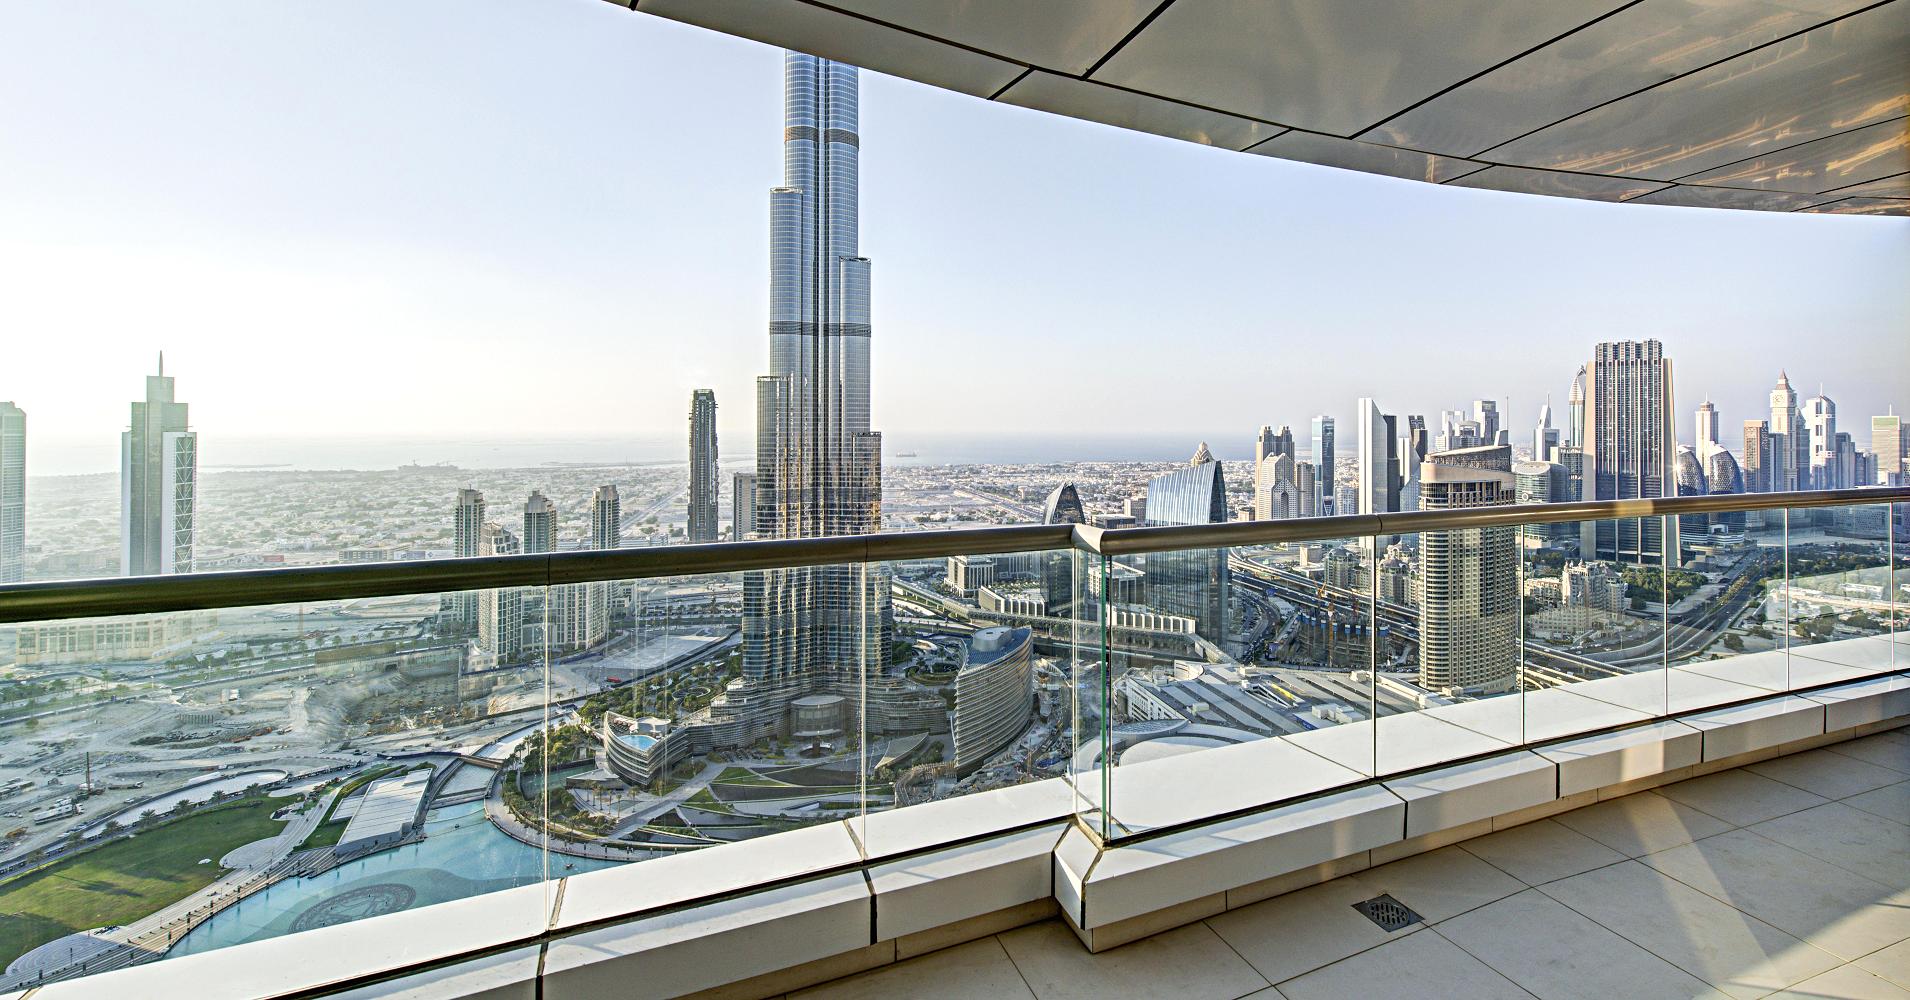 السعوديون يغلقون فنادق دبي والقطاع الفندقي يعلن الاستنفار